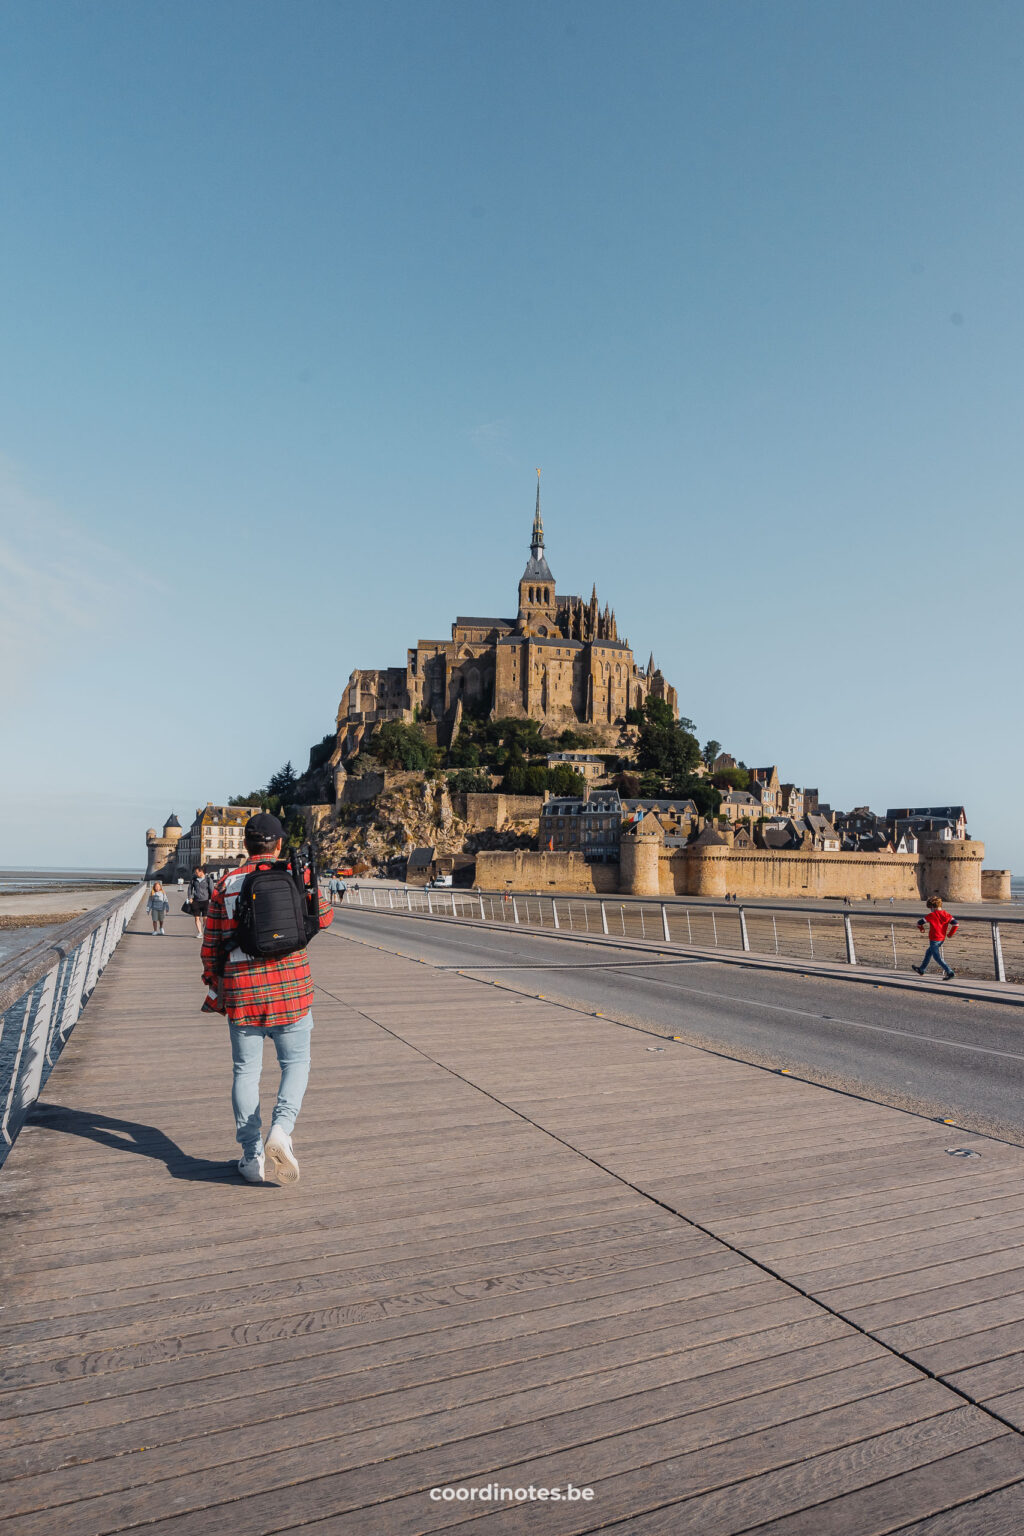 Visiting Mont Saint Michel